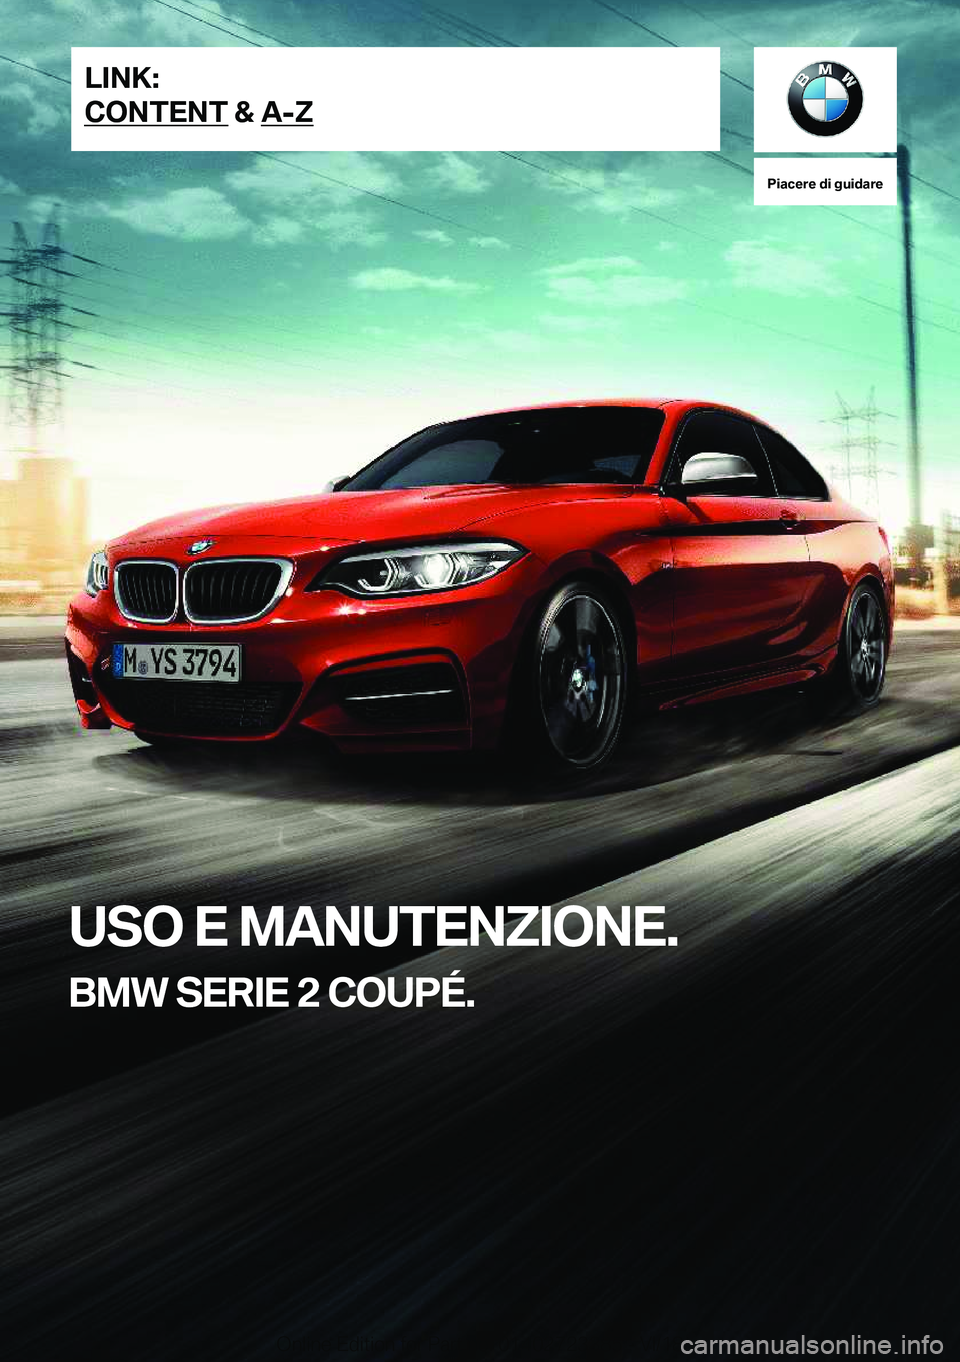 BMW 2 SERIES COUPE 2019  Libretti Di Uso E manutenzione (in Italian) �P�i�a�c�e�r�e��d�i��g�u�i�d�a�r�e
�U�S�O��E��M�A�N�U�T�E�N�;�I�O�N�E�.
�B�M�W��S�E�R�I�E��2��C�O�U�P�